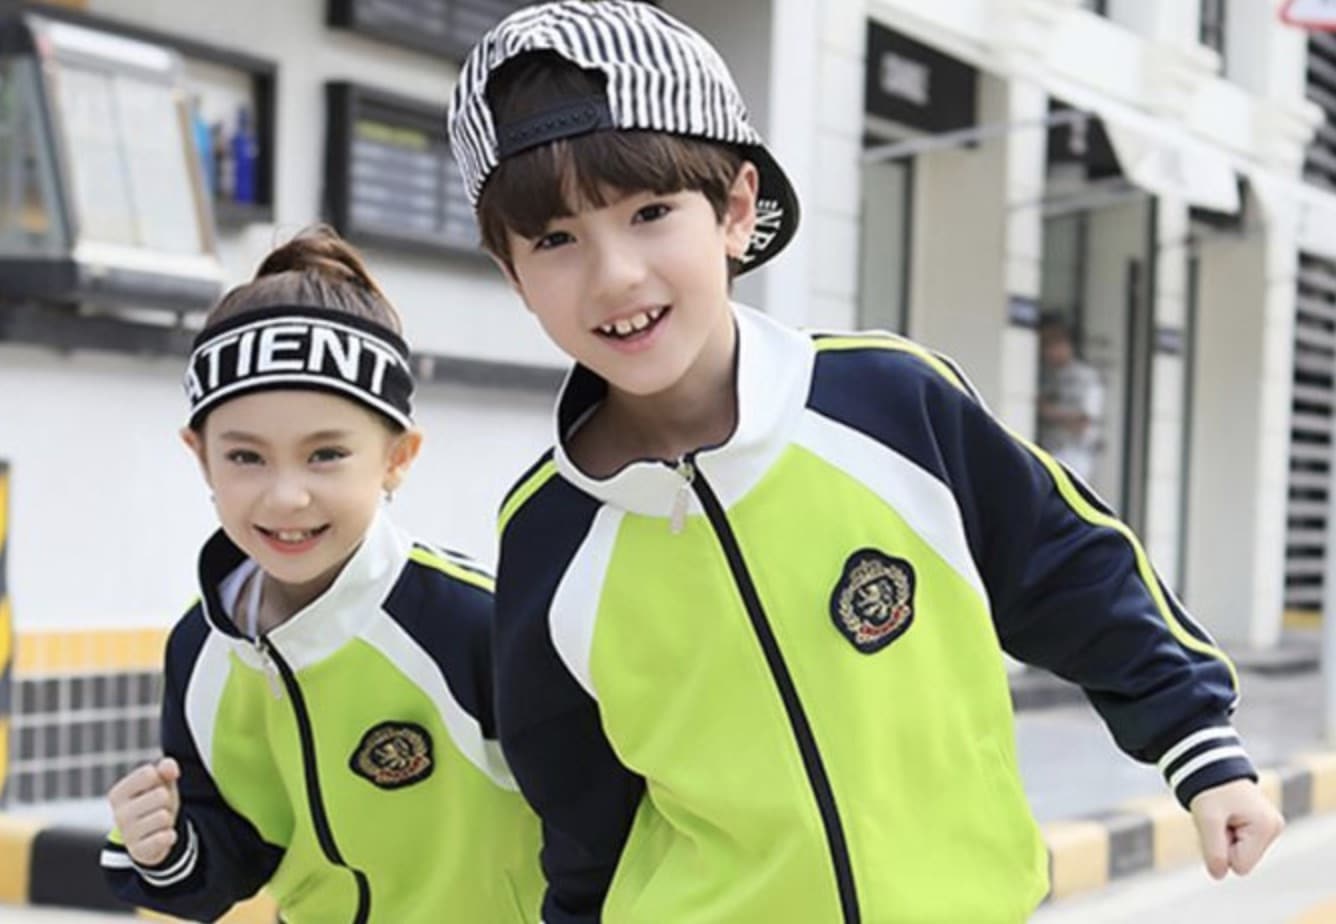 En Chine, les étudiants portent des uniformes connectés qui permettent de suivre leur position